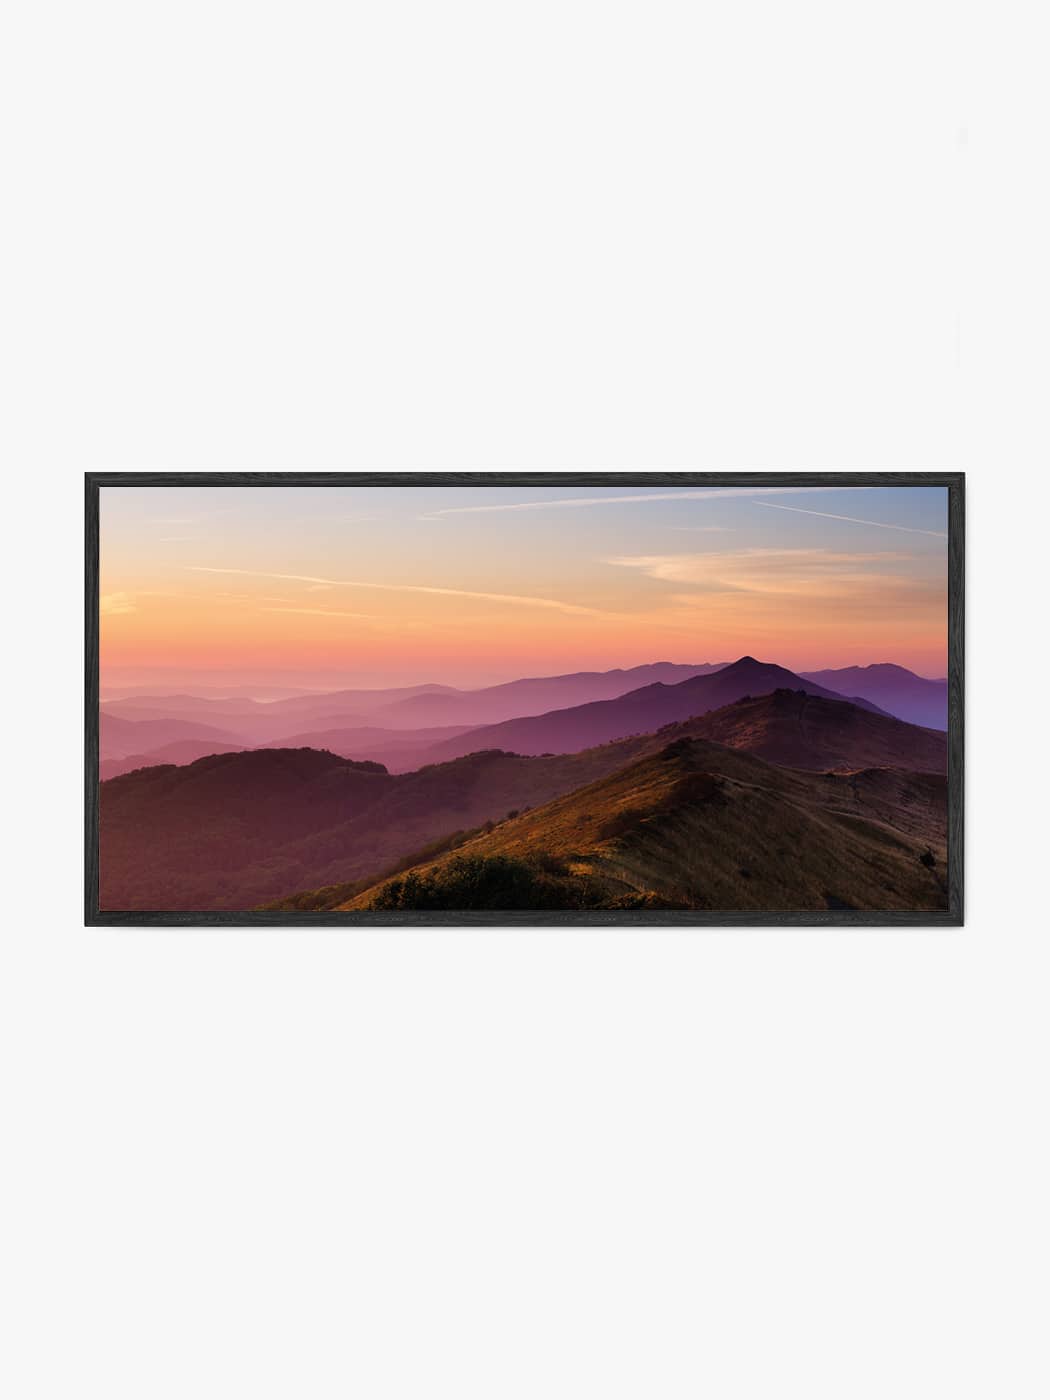 Obraz akustyczny ze zdjęcia - Różowe i fioletowe wzgórza i doliny tuż po zachodzie słońca - Łukasz Popielarczyk